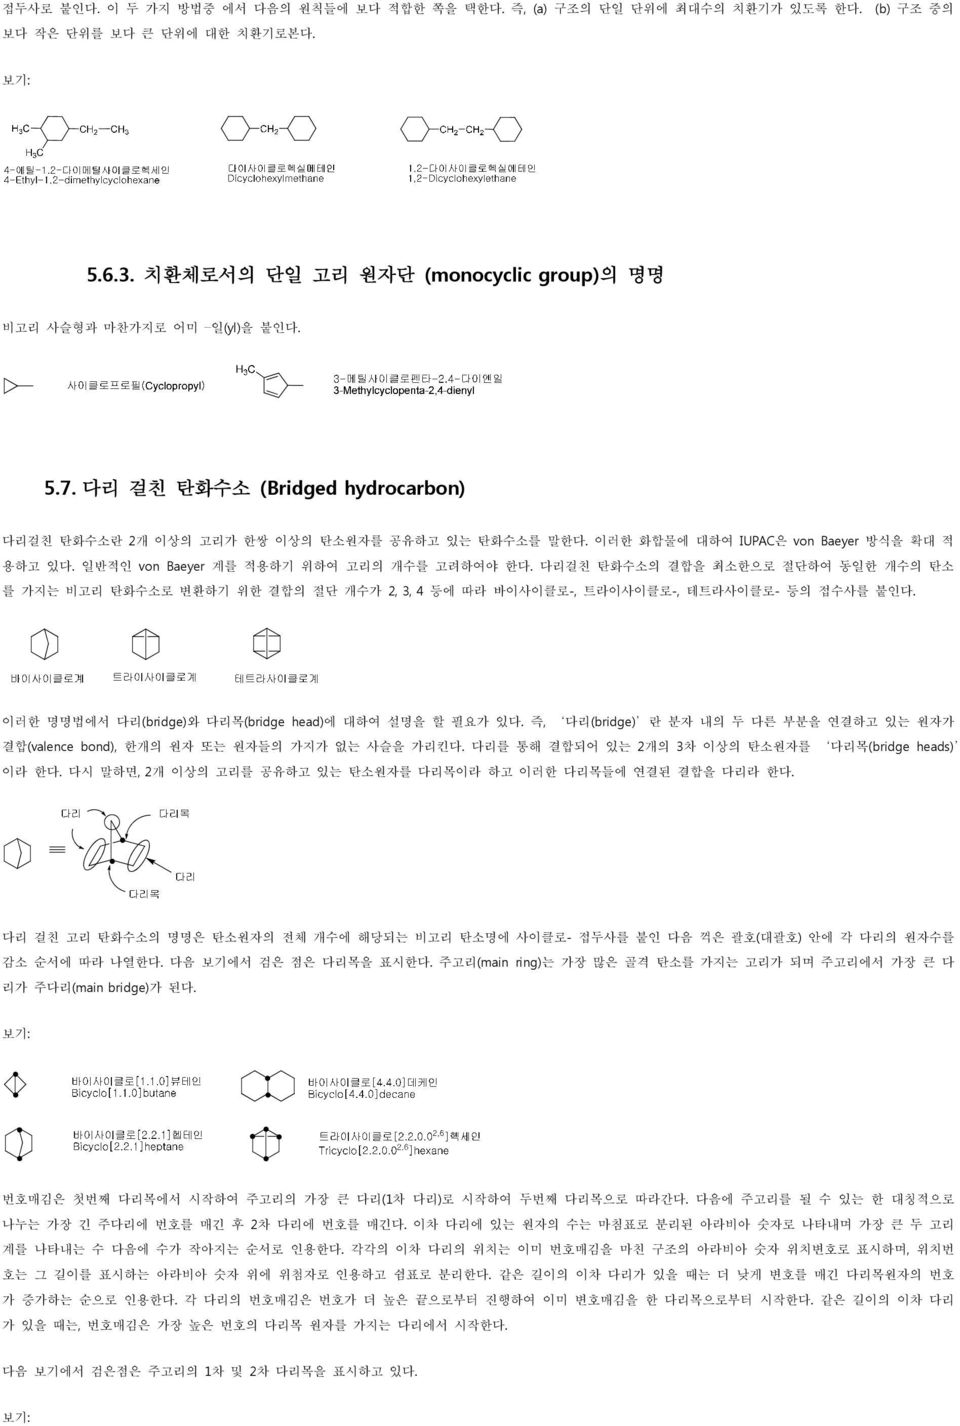 이러한 화합물에 대하여 IUPAC은 von Baeyer 방식을 확대 적 용하고 있다. 일반적인 von Baeyer 계를 적용하기 위하여 고리의 개수를 고려하여야 한다.